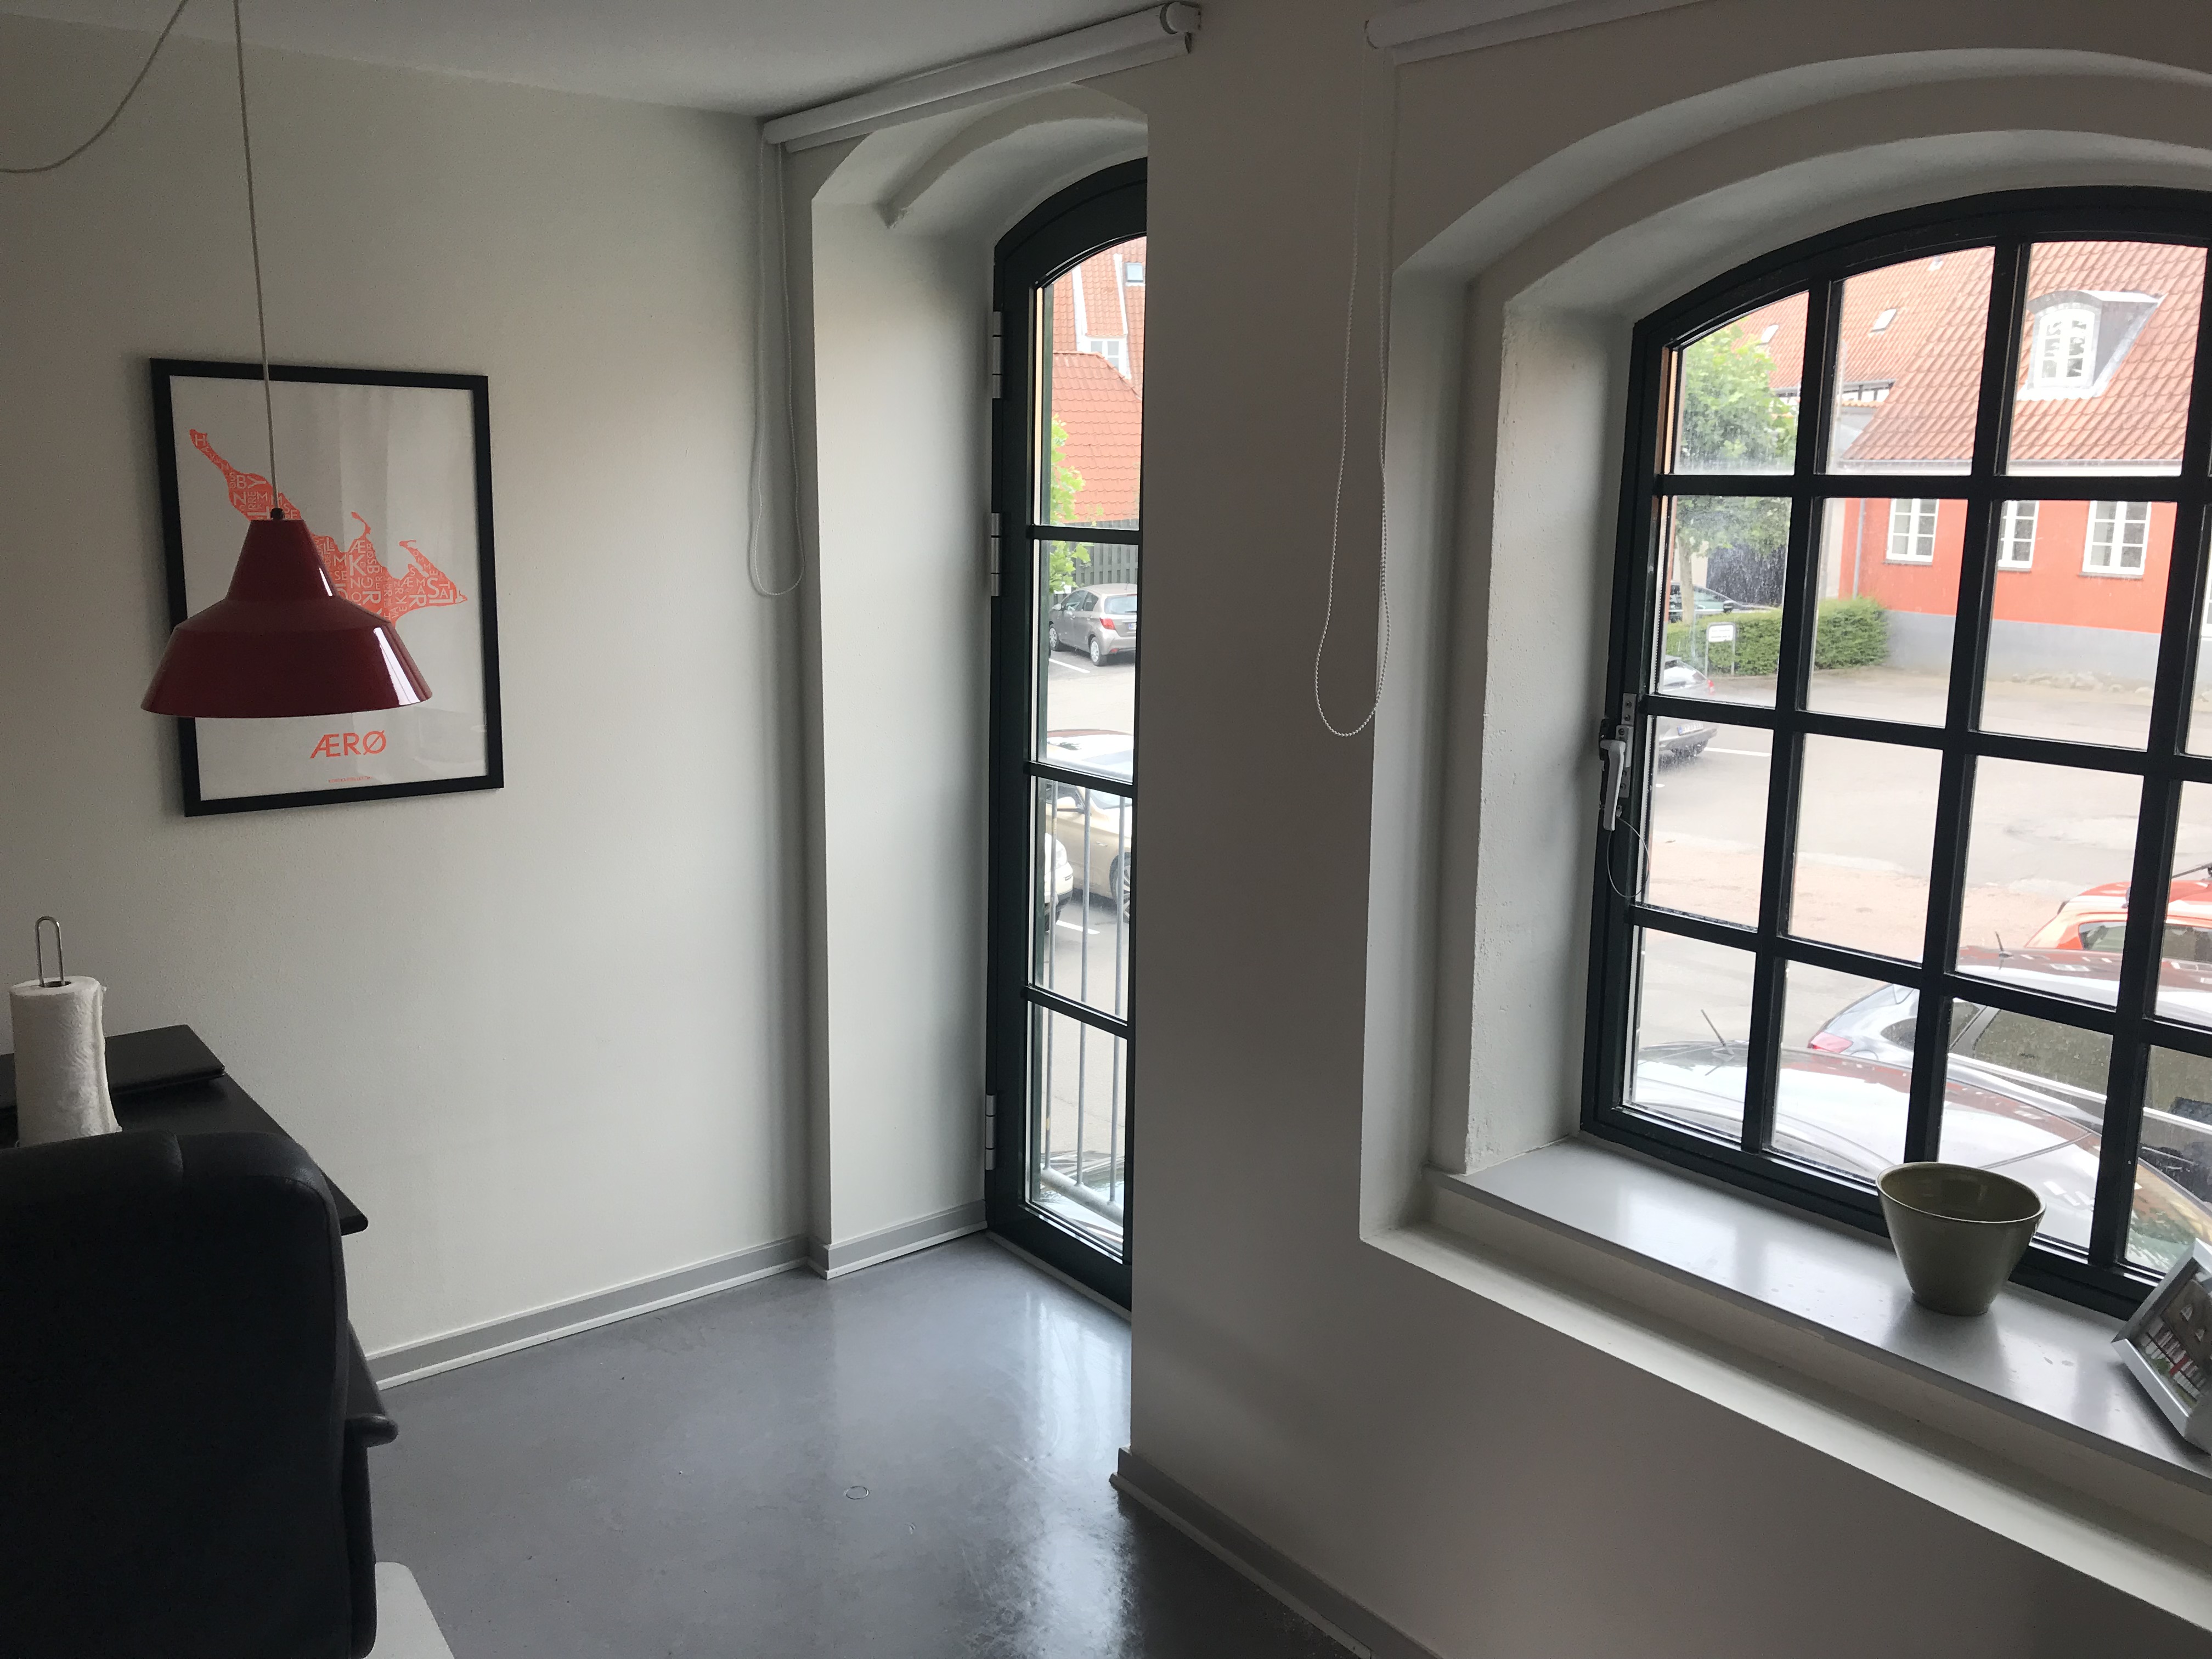 Foto 1 af kollegieværelse på Jernbanegade kollegiet, vindue i stue